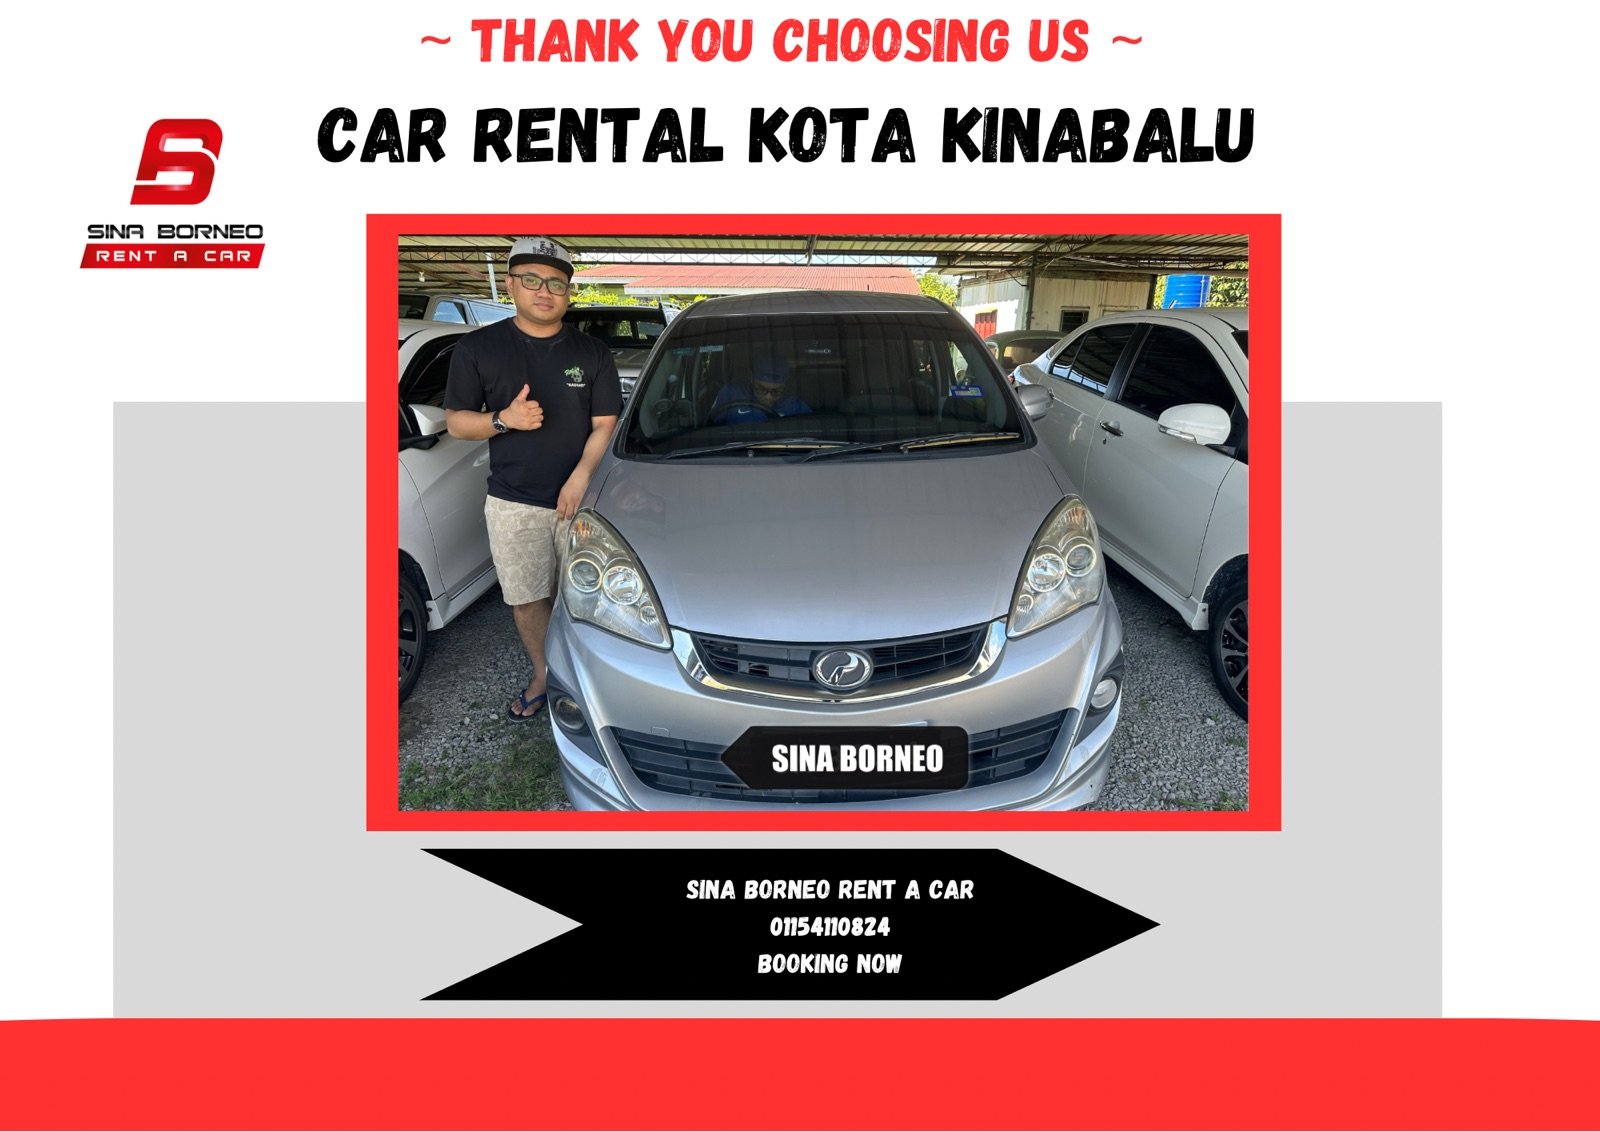 Car Rental Kota Kinabalu & Sina Borneo Rent A Car